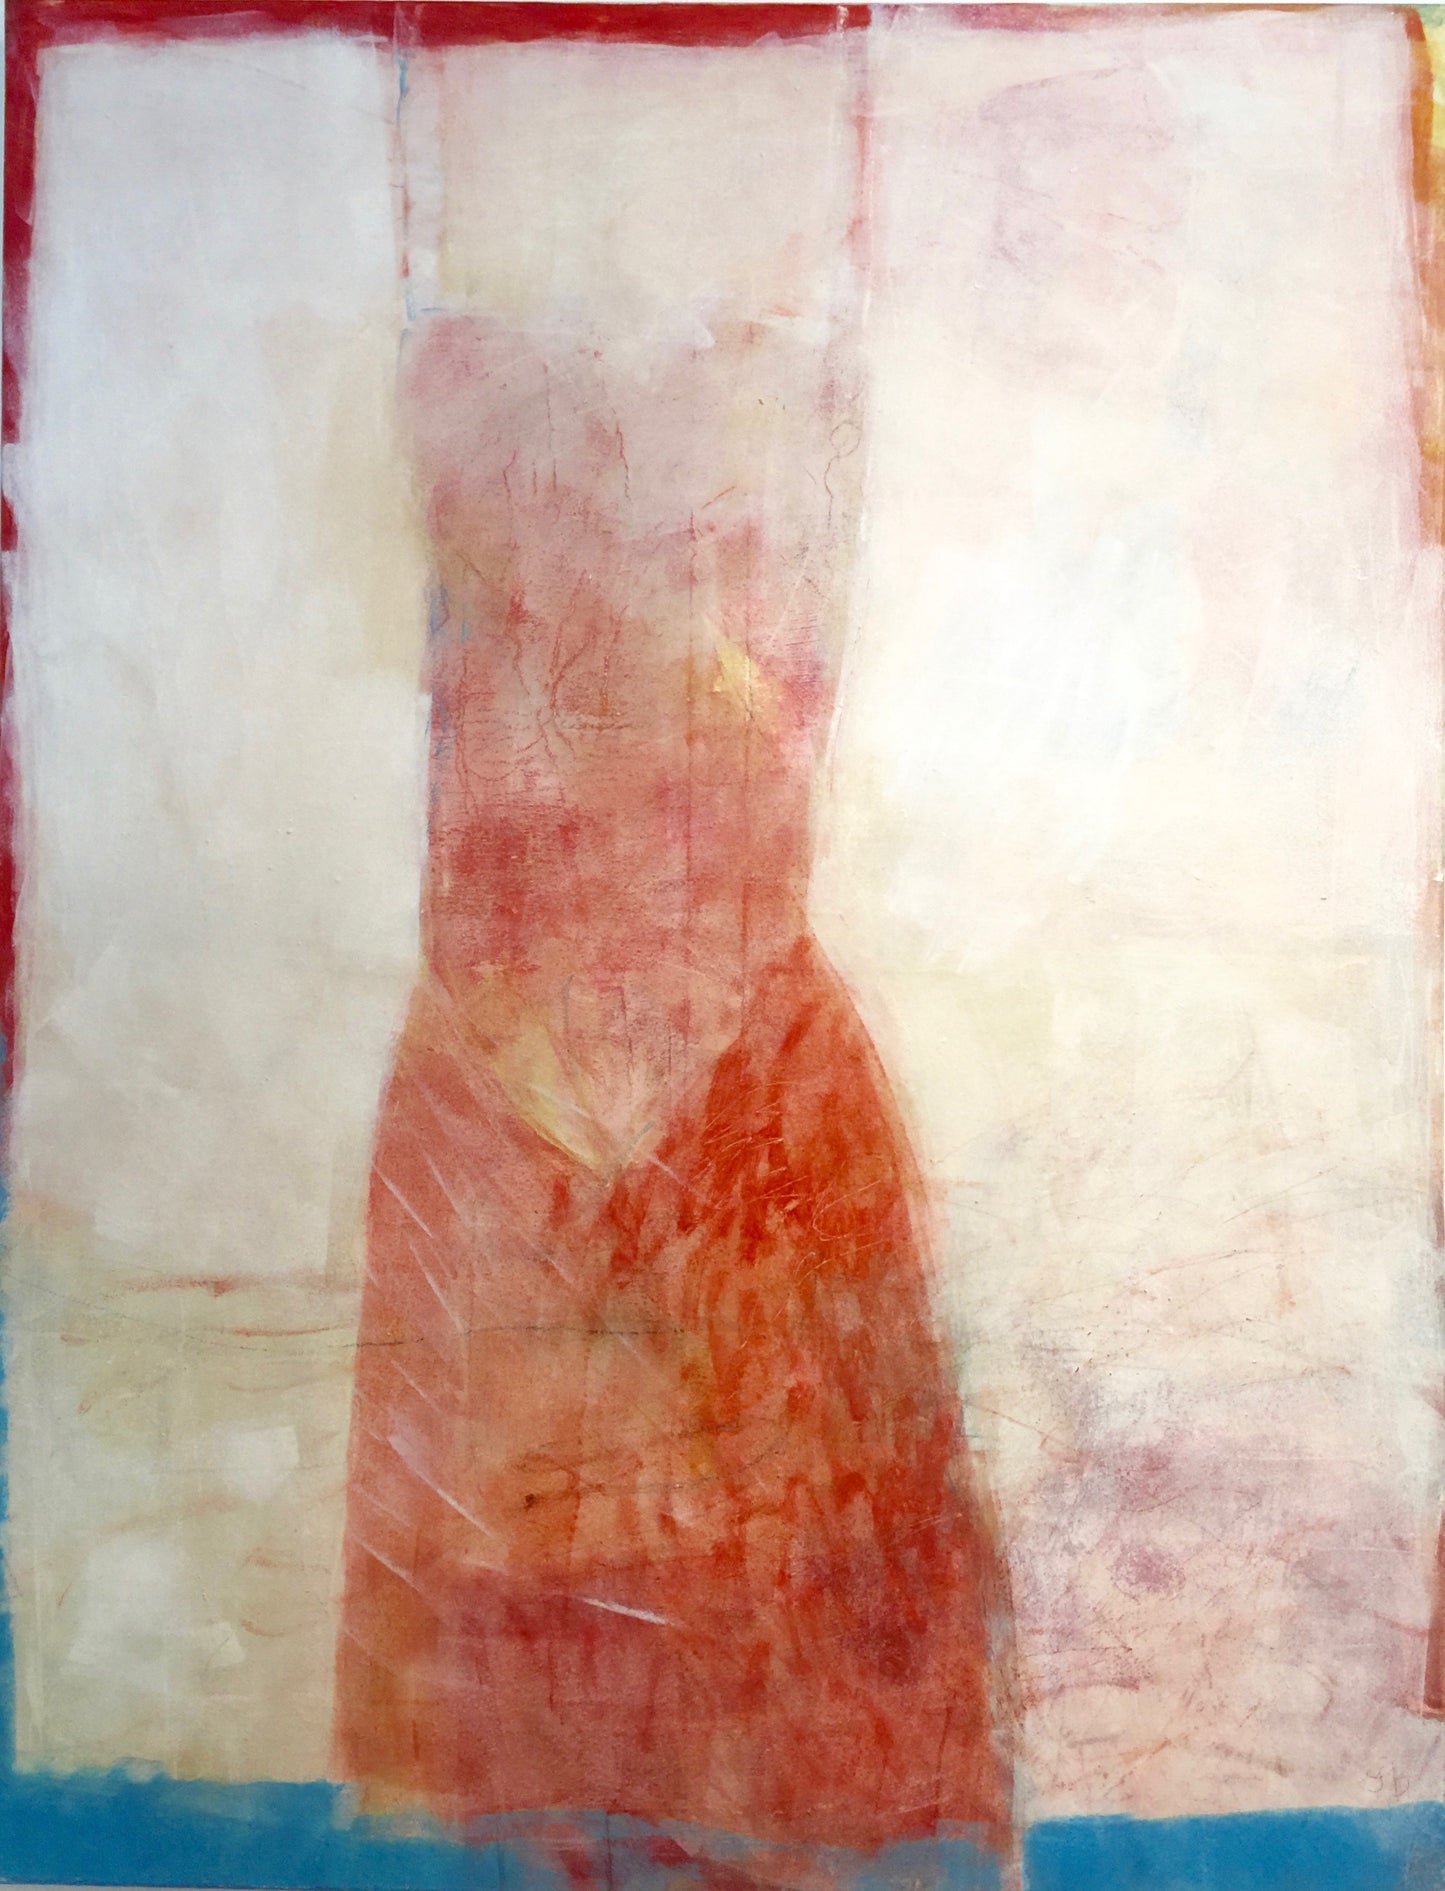 Inga Björstedt - Naken röd (Naked red), egg oil tempera painting